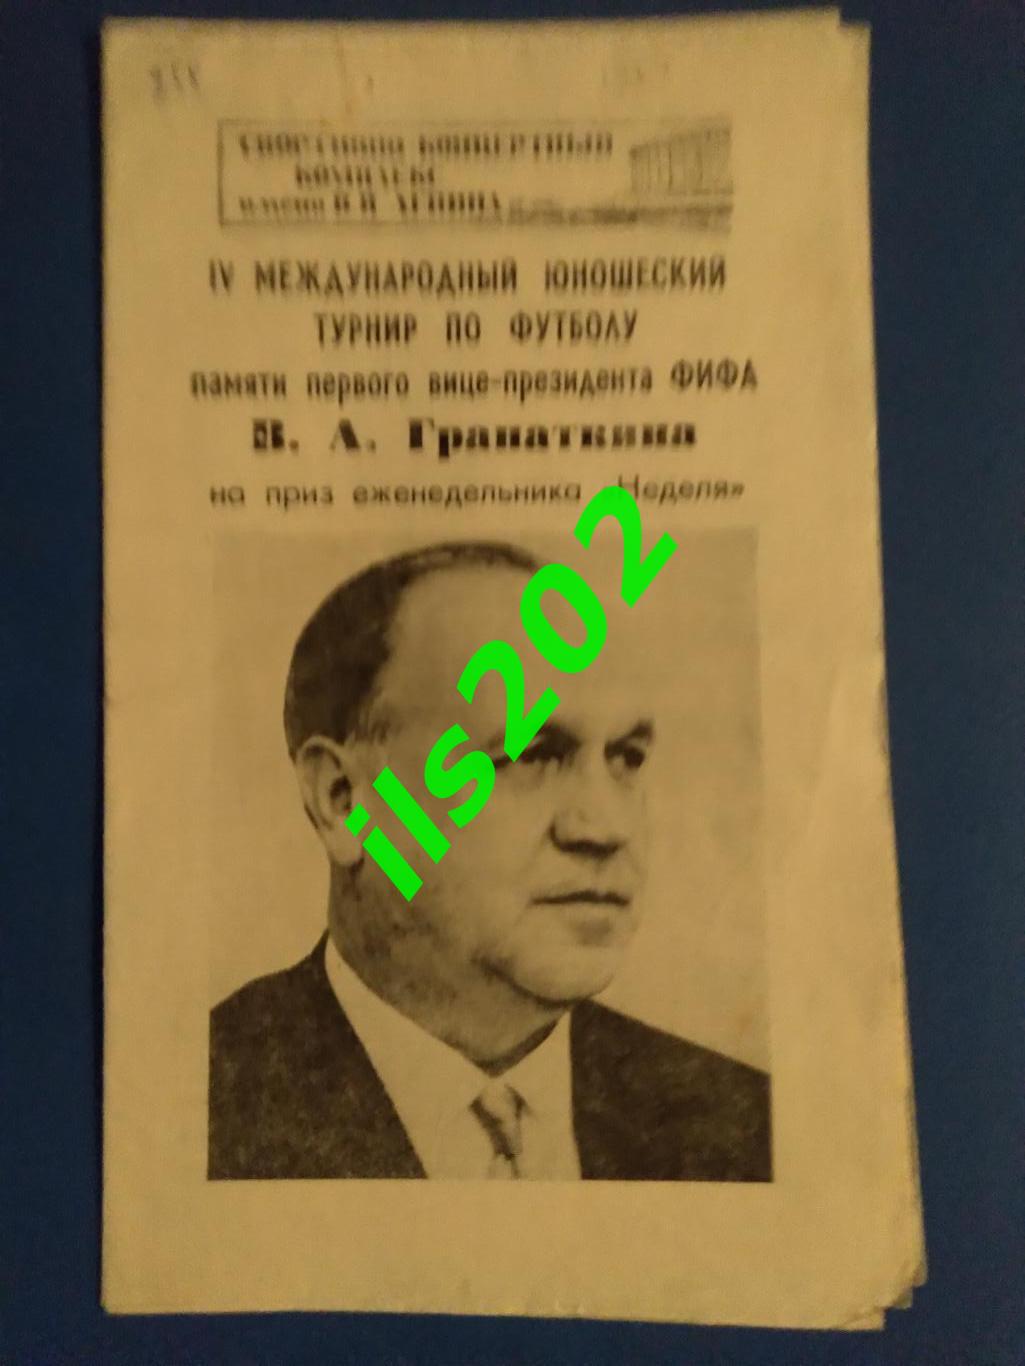 турнир памяти В.А. Гранаткина 1984 (сборная СССР юношеская)